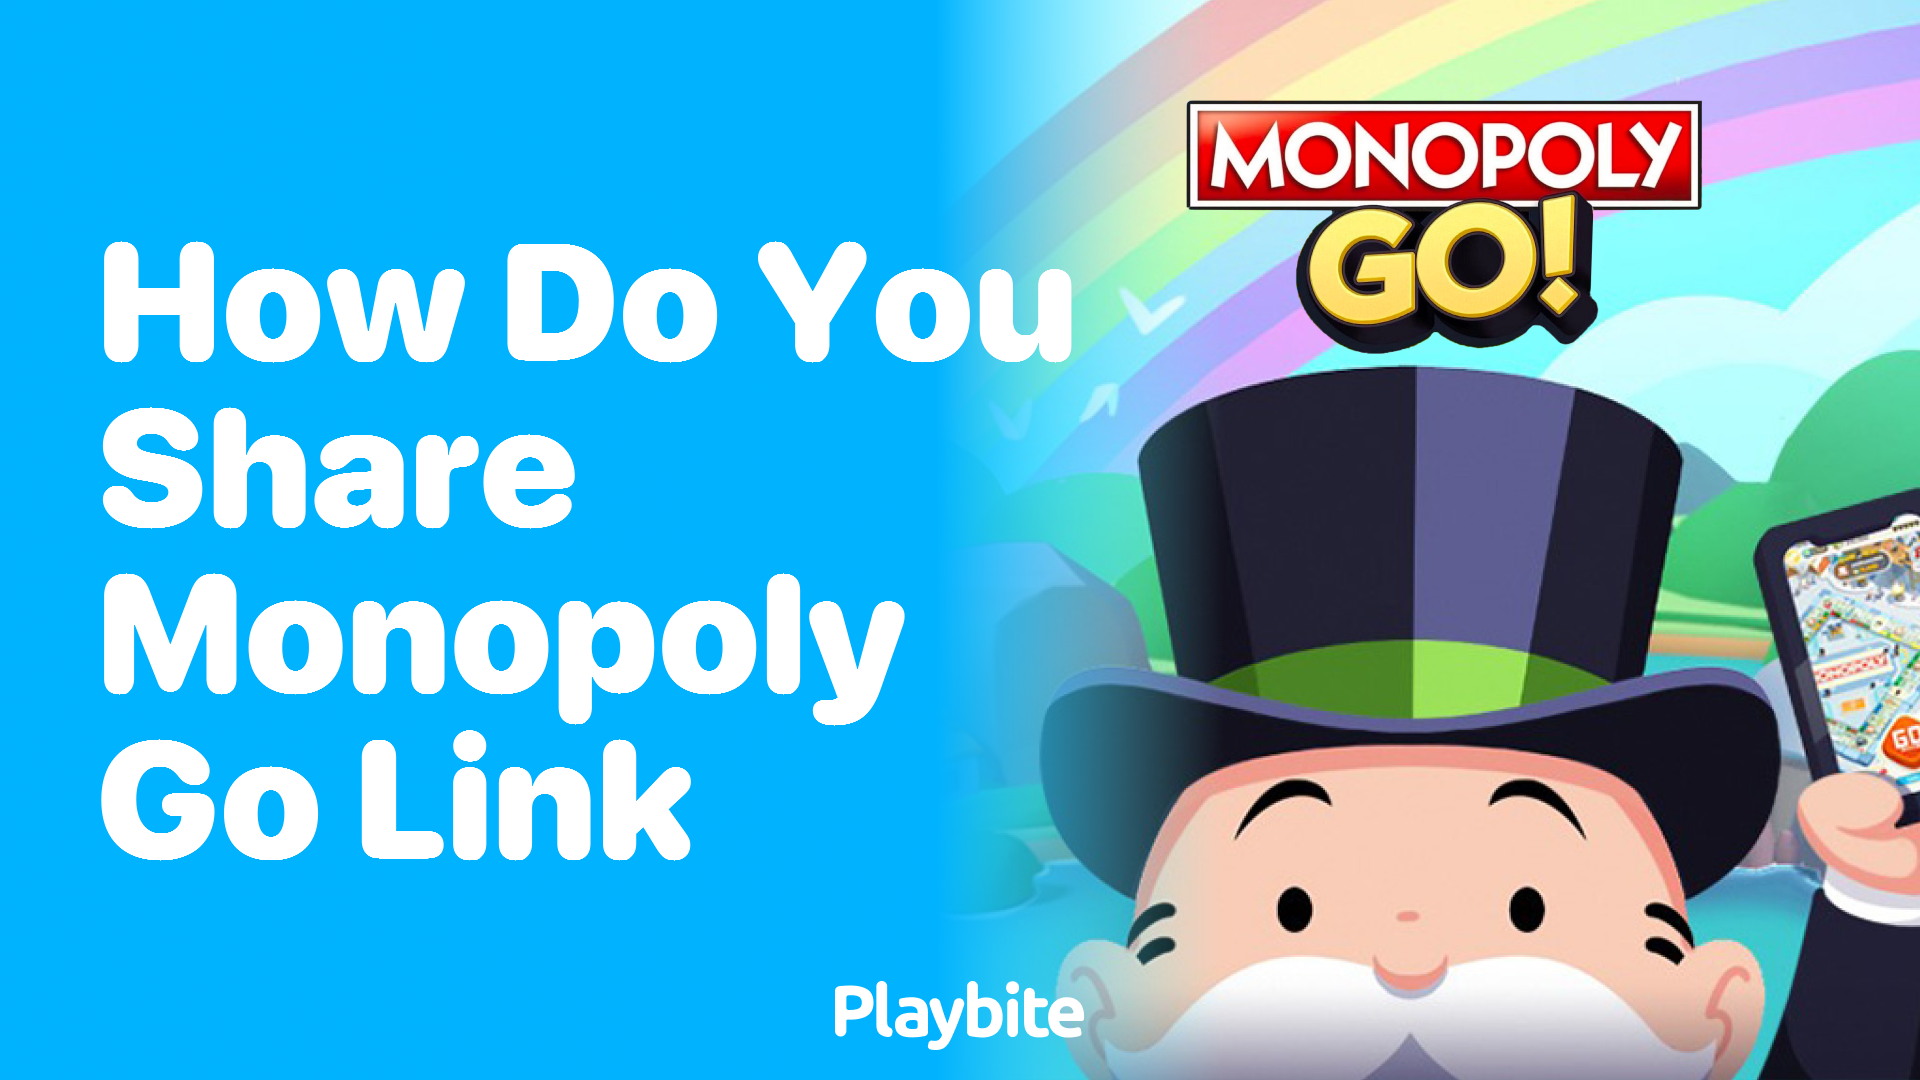 How Do You Share a Monopoly Go Link?